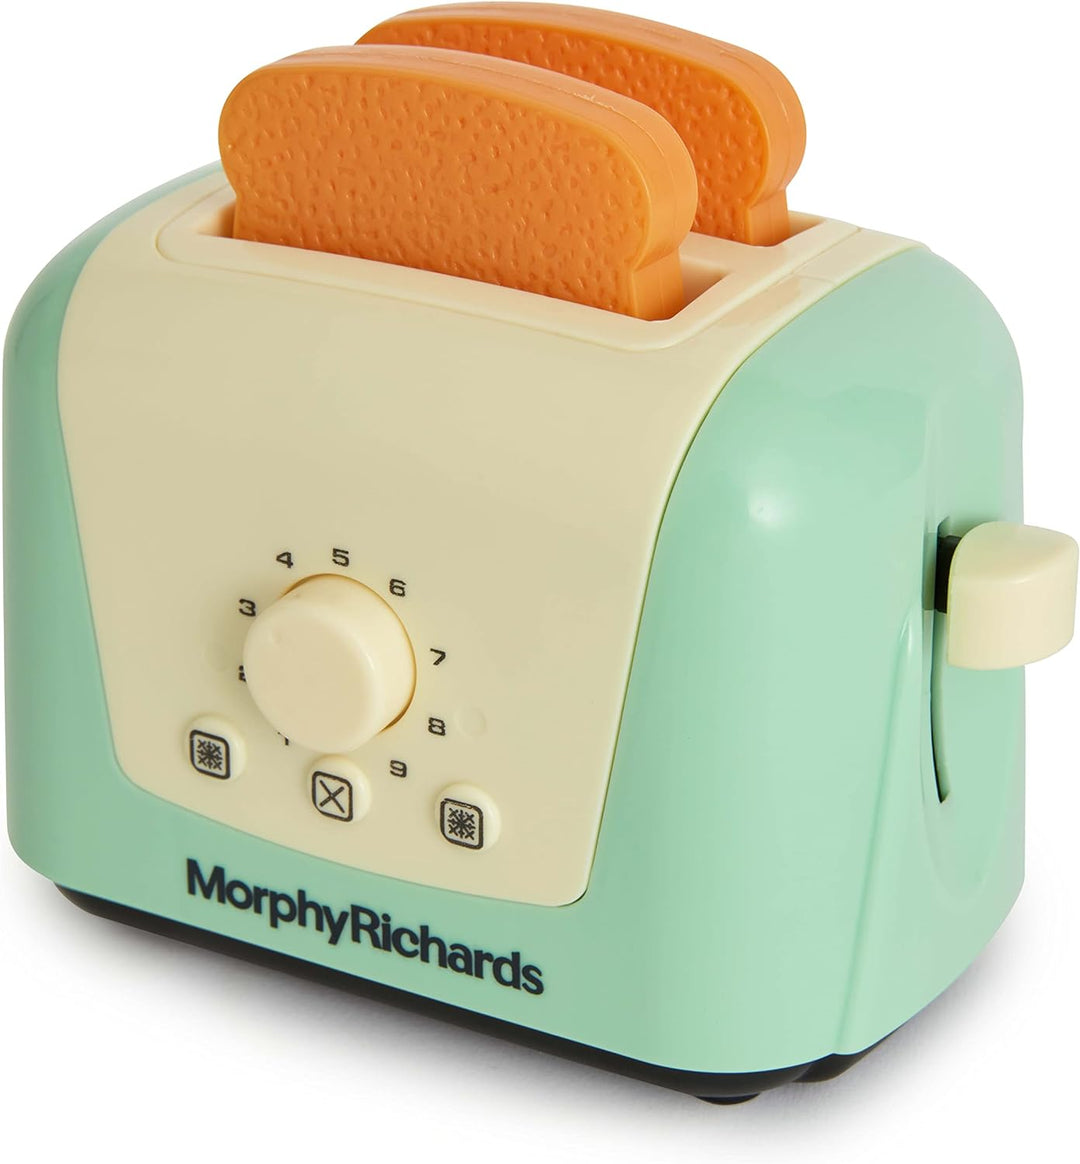 Casdon 64950 Morphy Richards Pop-Up-Spielzeug-Toaster für Kinder ab 3 Jahren | Inklusive